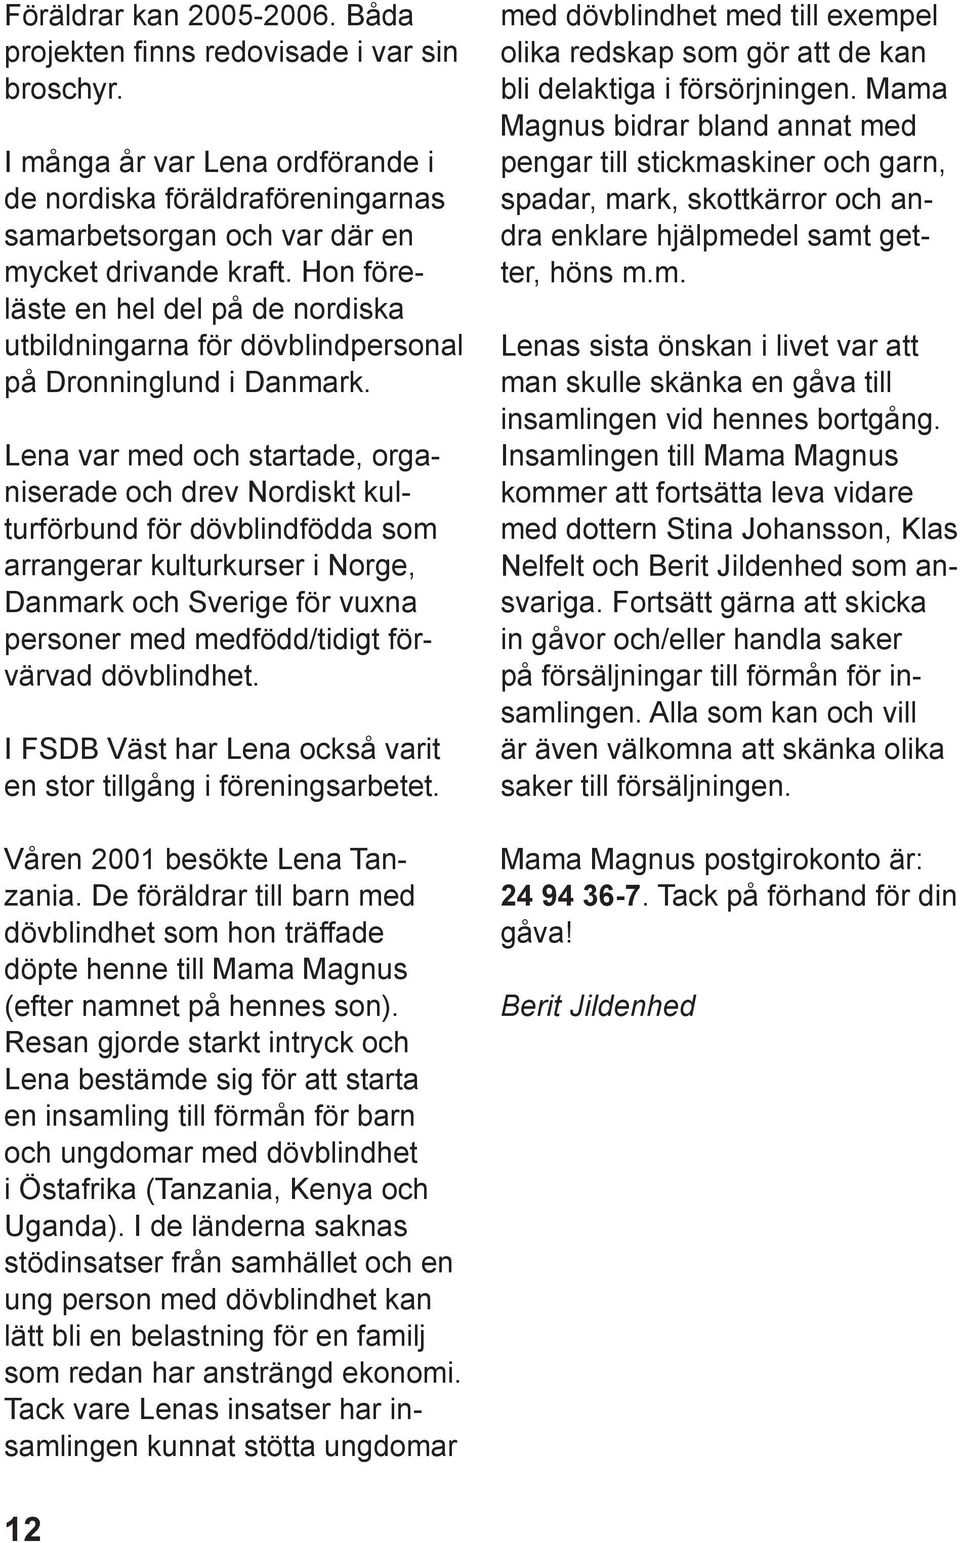 Lena var med och startade, organiserade och drev Nordiskt kulturförbund för dövblindfödda som arrangerar kulturkurser i Norge, Danmark och Sverige för vuxna personer med medfödd/tidigt förvärvad